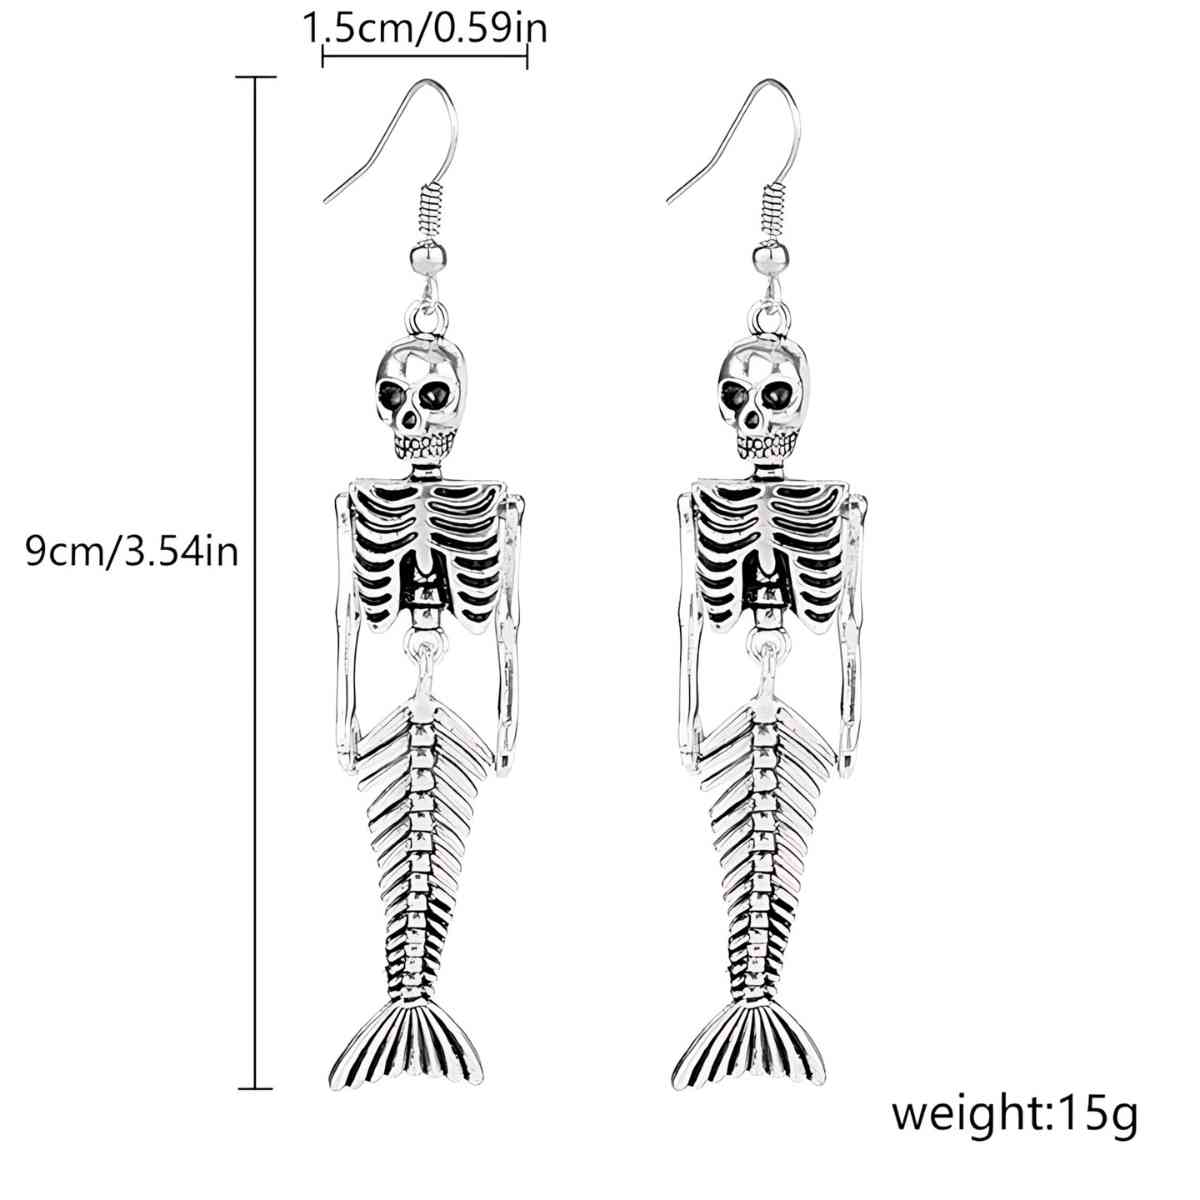 Mermaid Skeleton Earrings Details - Xenos Jewelry